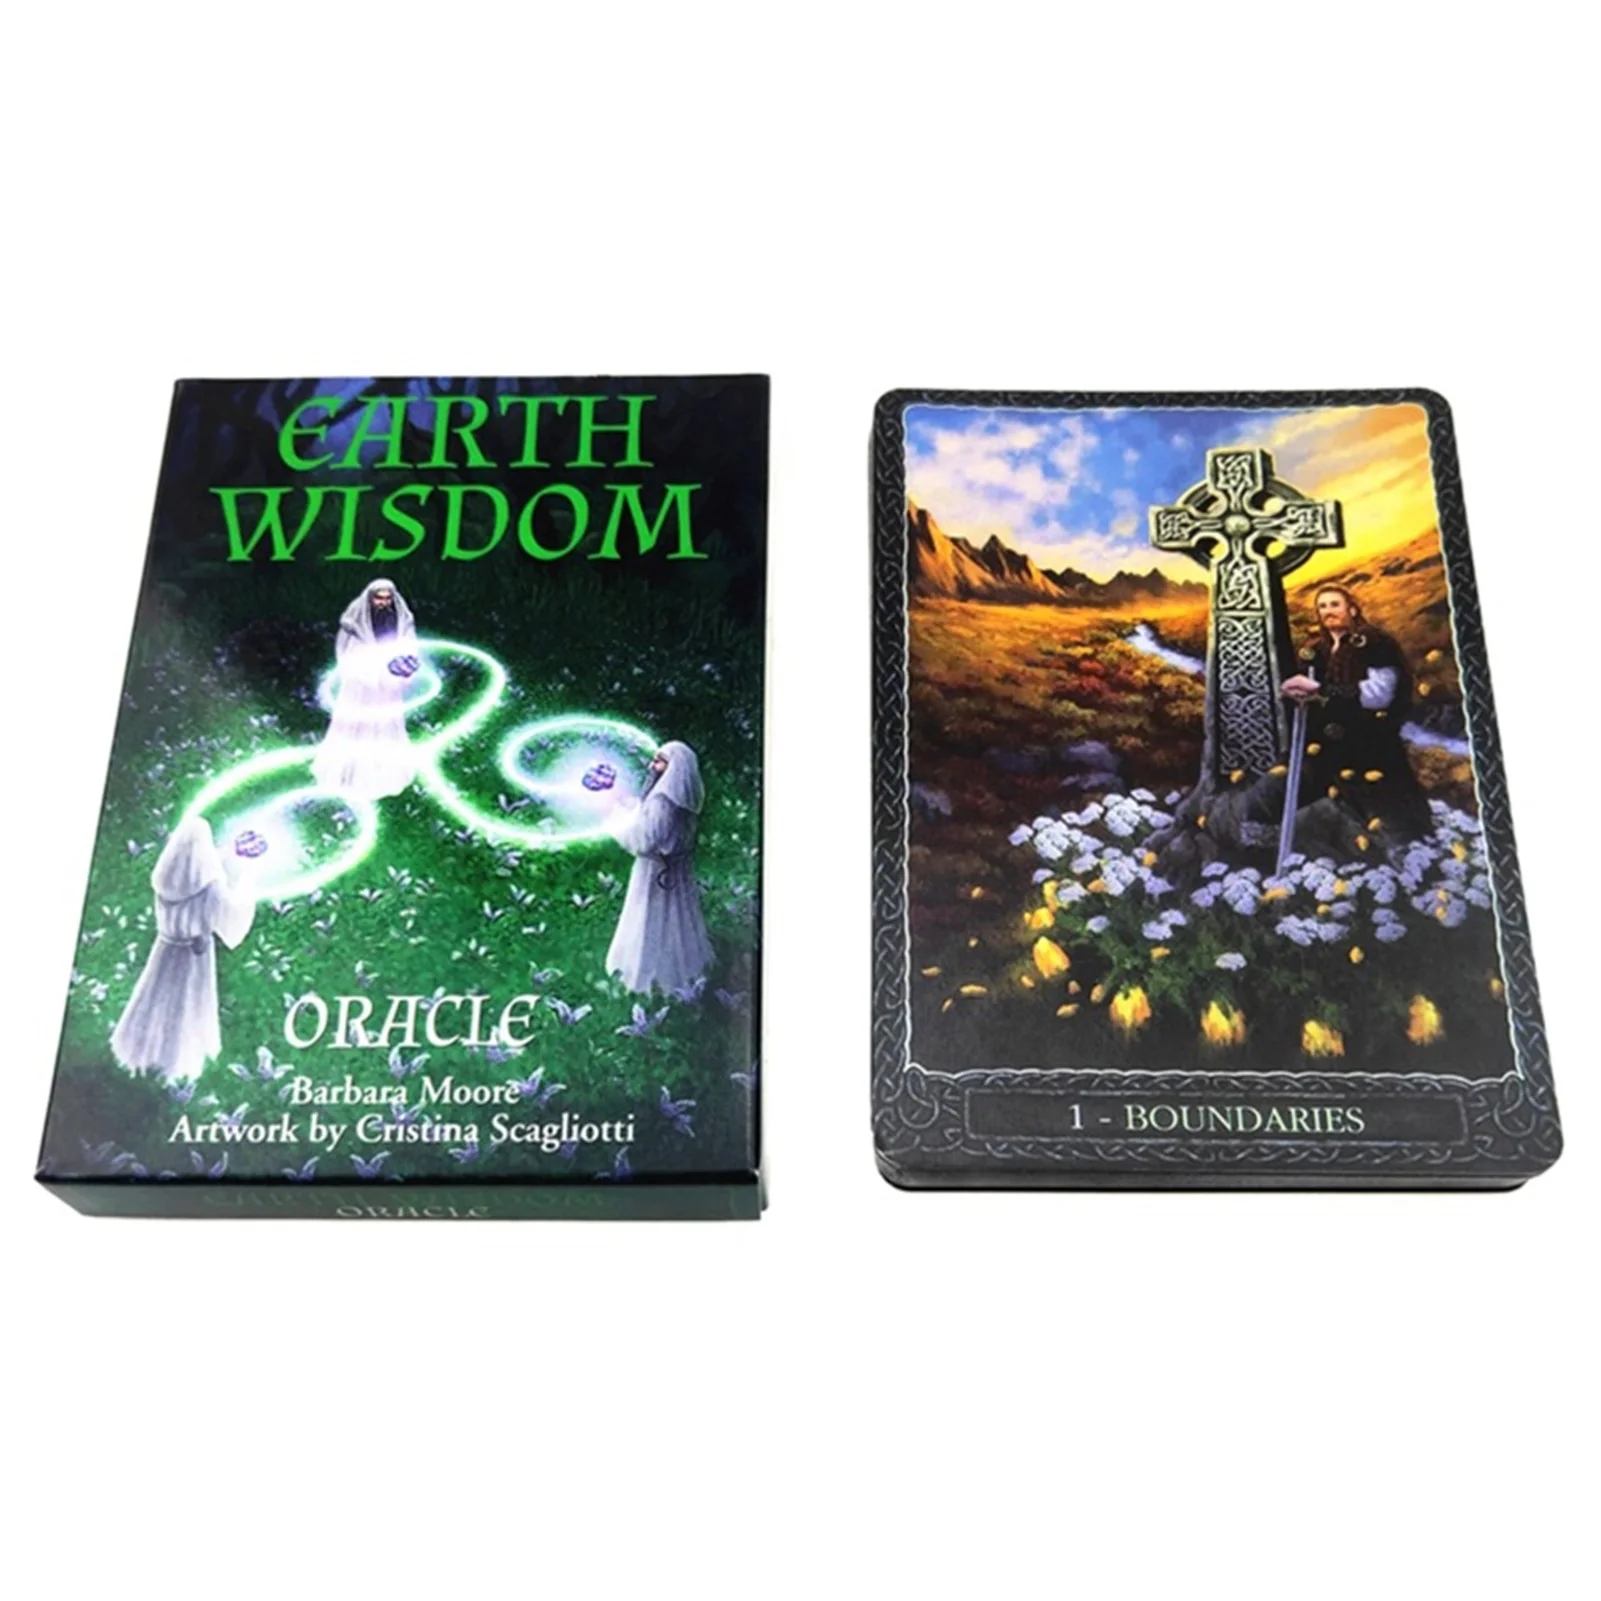 

Карманные карты-Таро New Earth Wisdom, карманная колода, английская версия, развлекательная доска для семейной вечеринки, игра